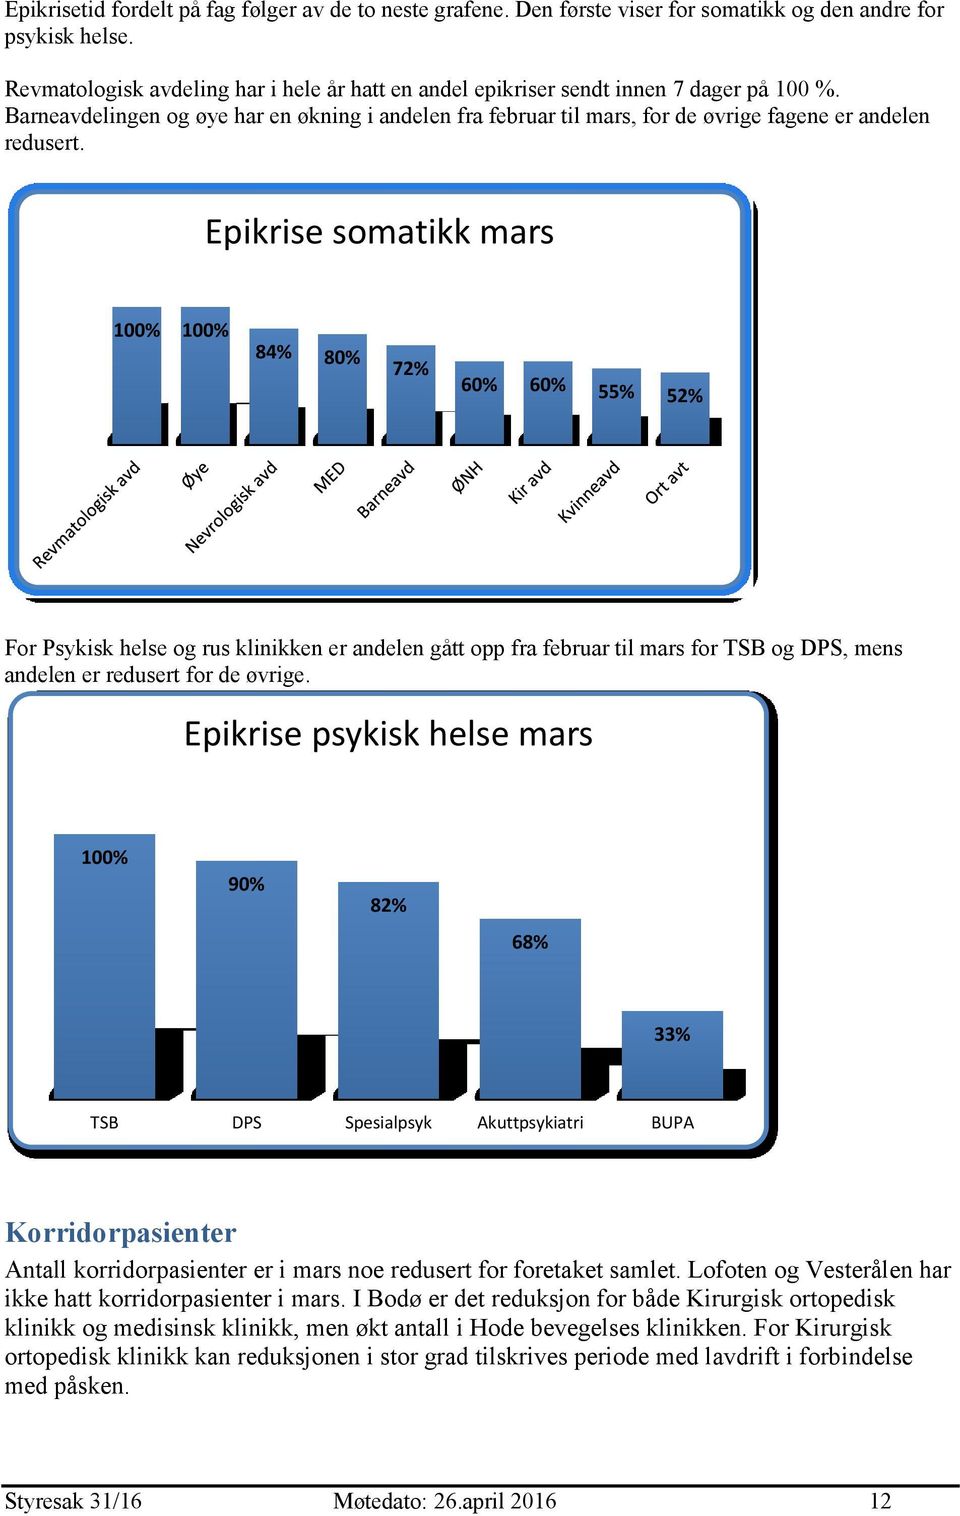 Epikrise somatikk mars 1% 1% 84% 8% 72% 6% 6% 55% 52% For Psykisk helse og rus klinikken er andelen gått opp fra februar til mars for TSB og DPS, mens andelen er redusert for de øvrige.